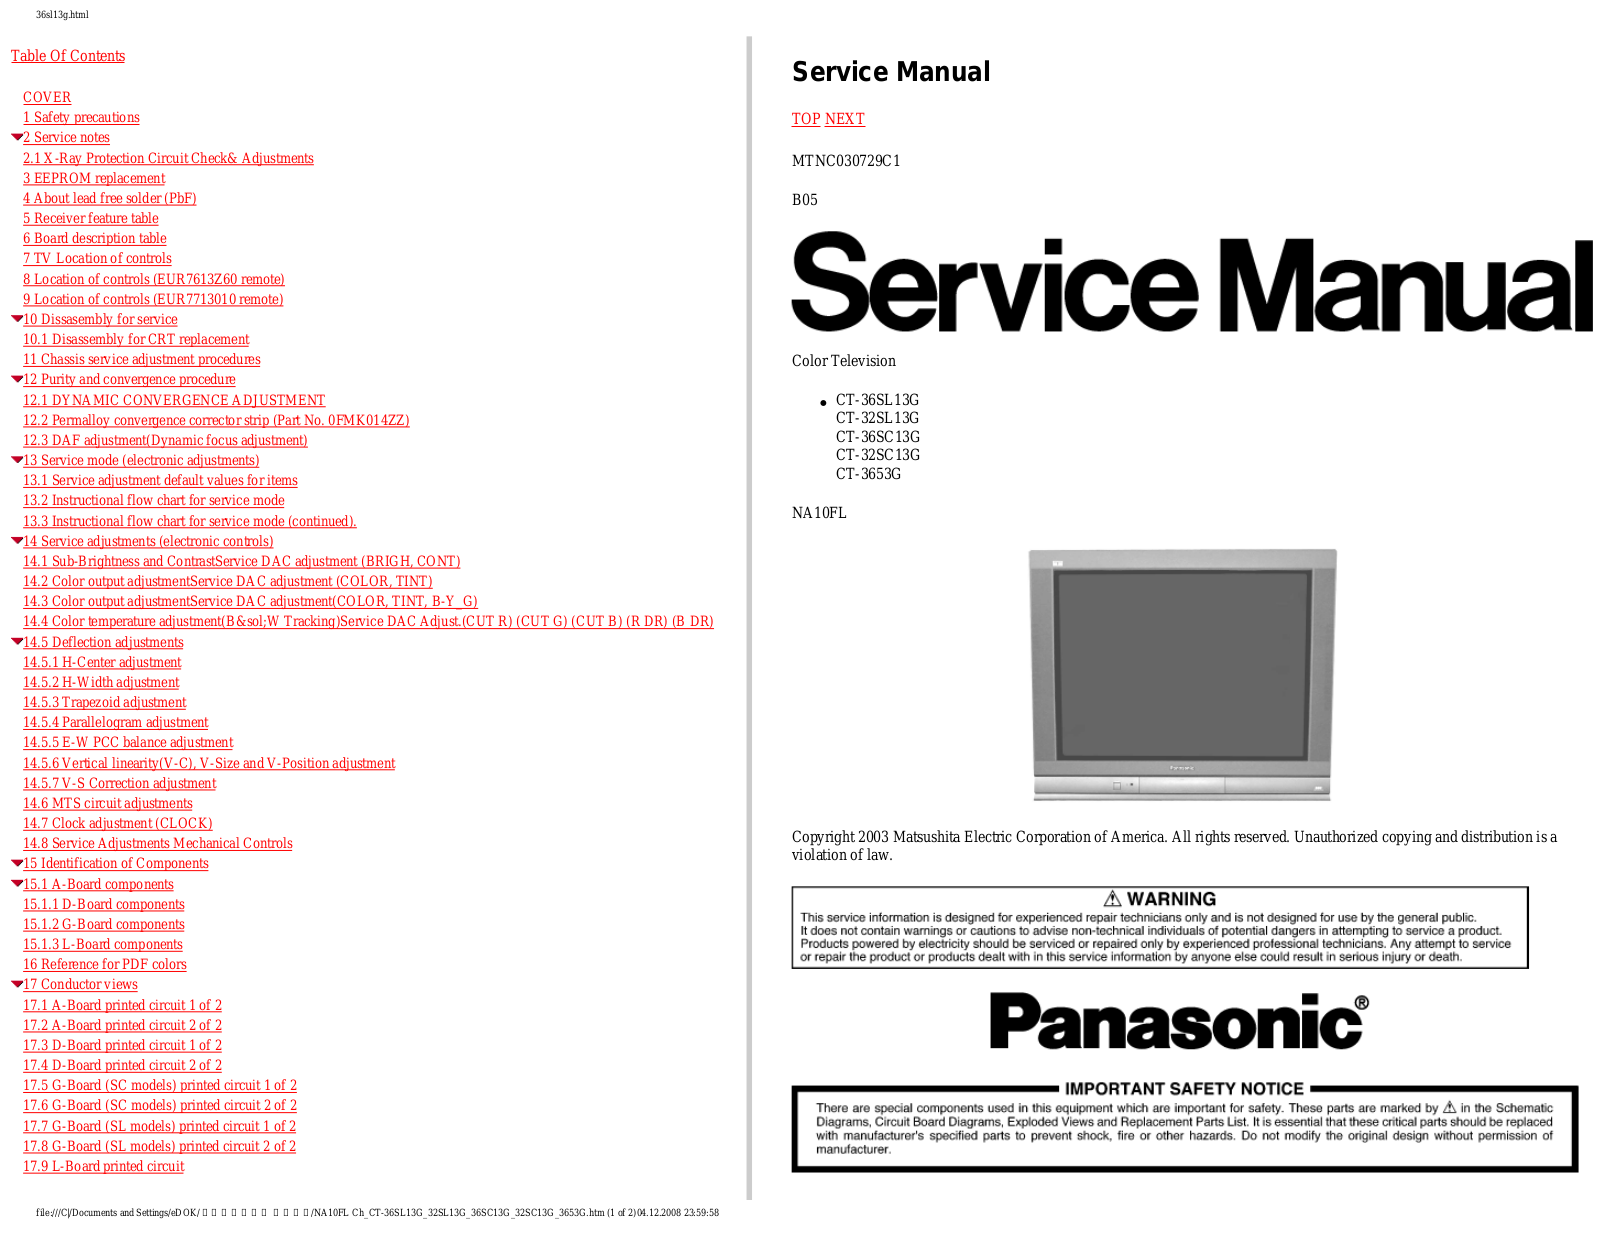 Panasonic CT-36SL13G, CT-3663G, CT-32SL13G, CT-36SC13G, CT-32SC13G Schematic